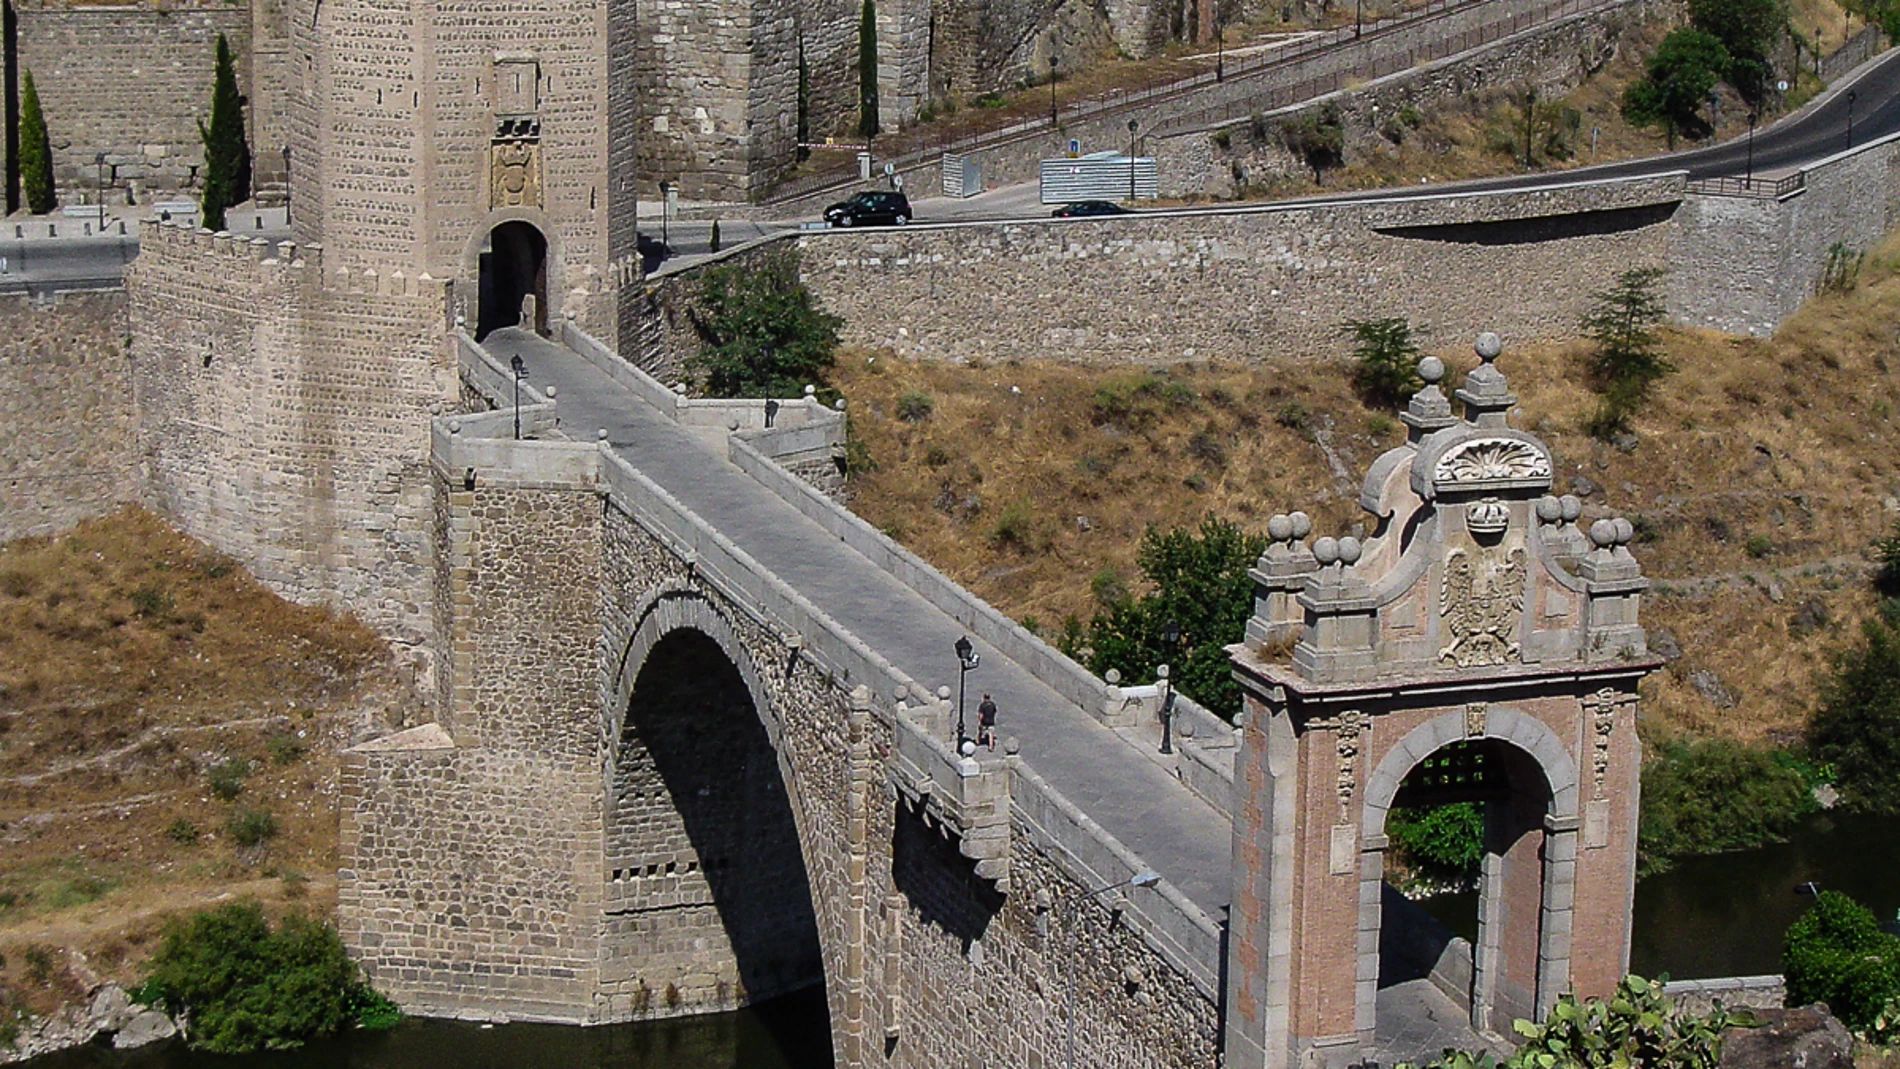 Puente de Alcántara de Toledo